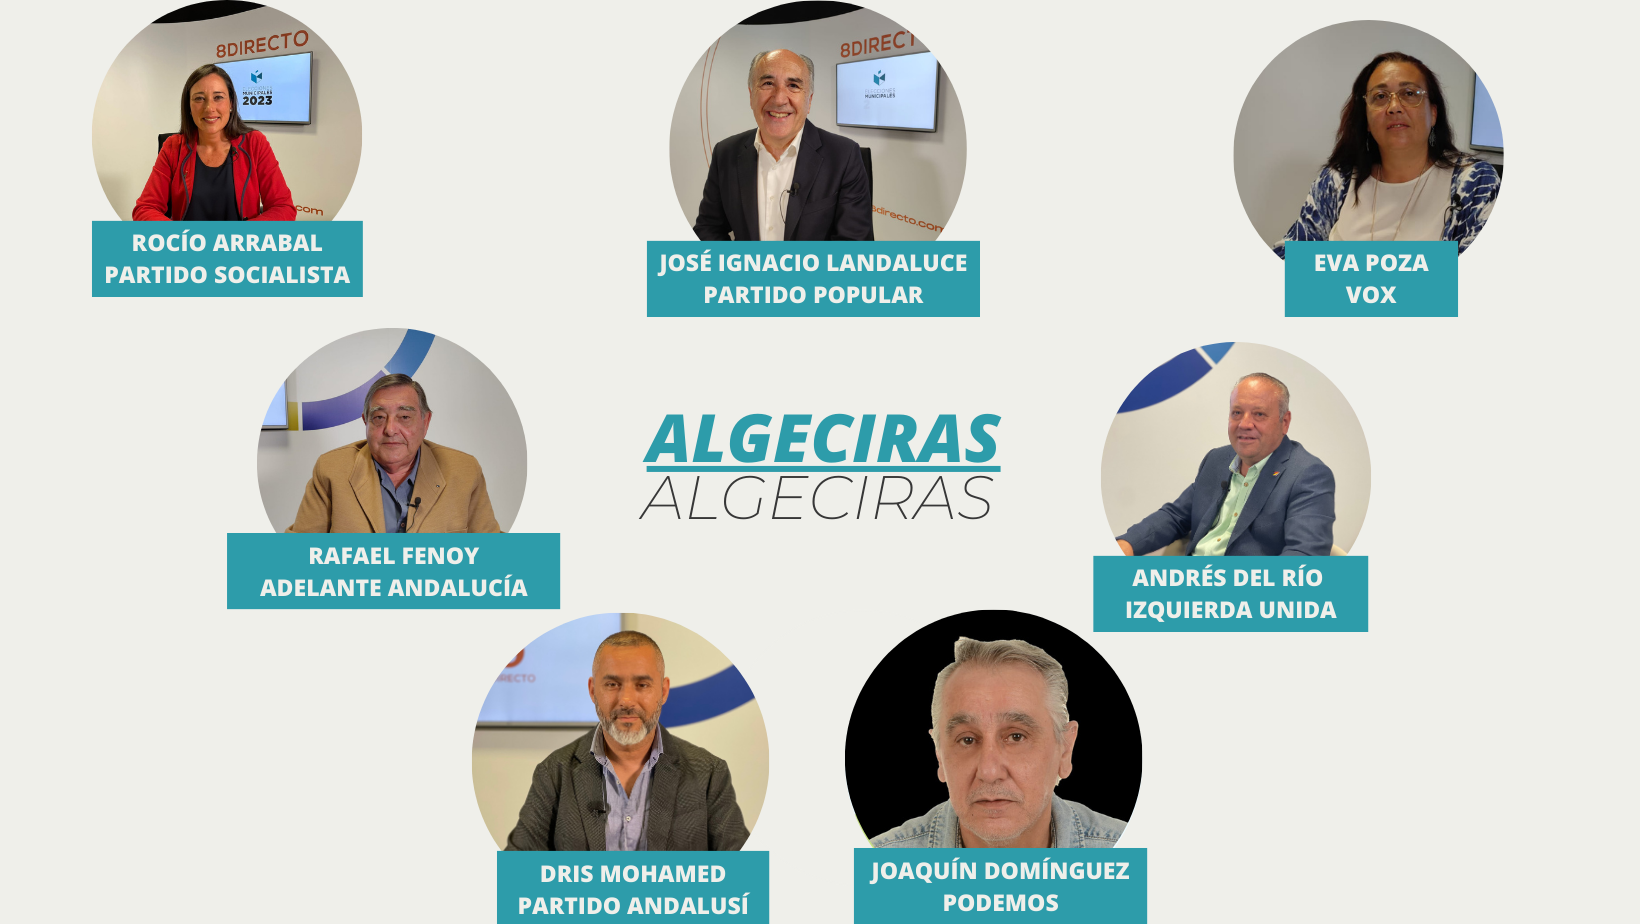 ¿Cuáles son los proyectos y propuestas de los candidatos al 28M en Algeciras? Foto: 8Directo.